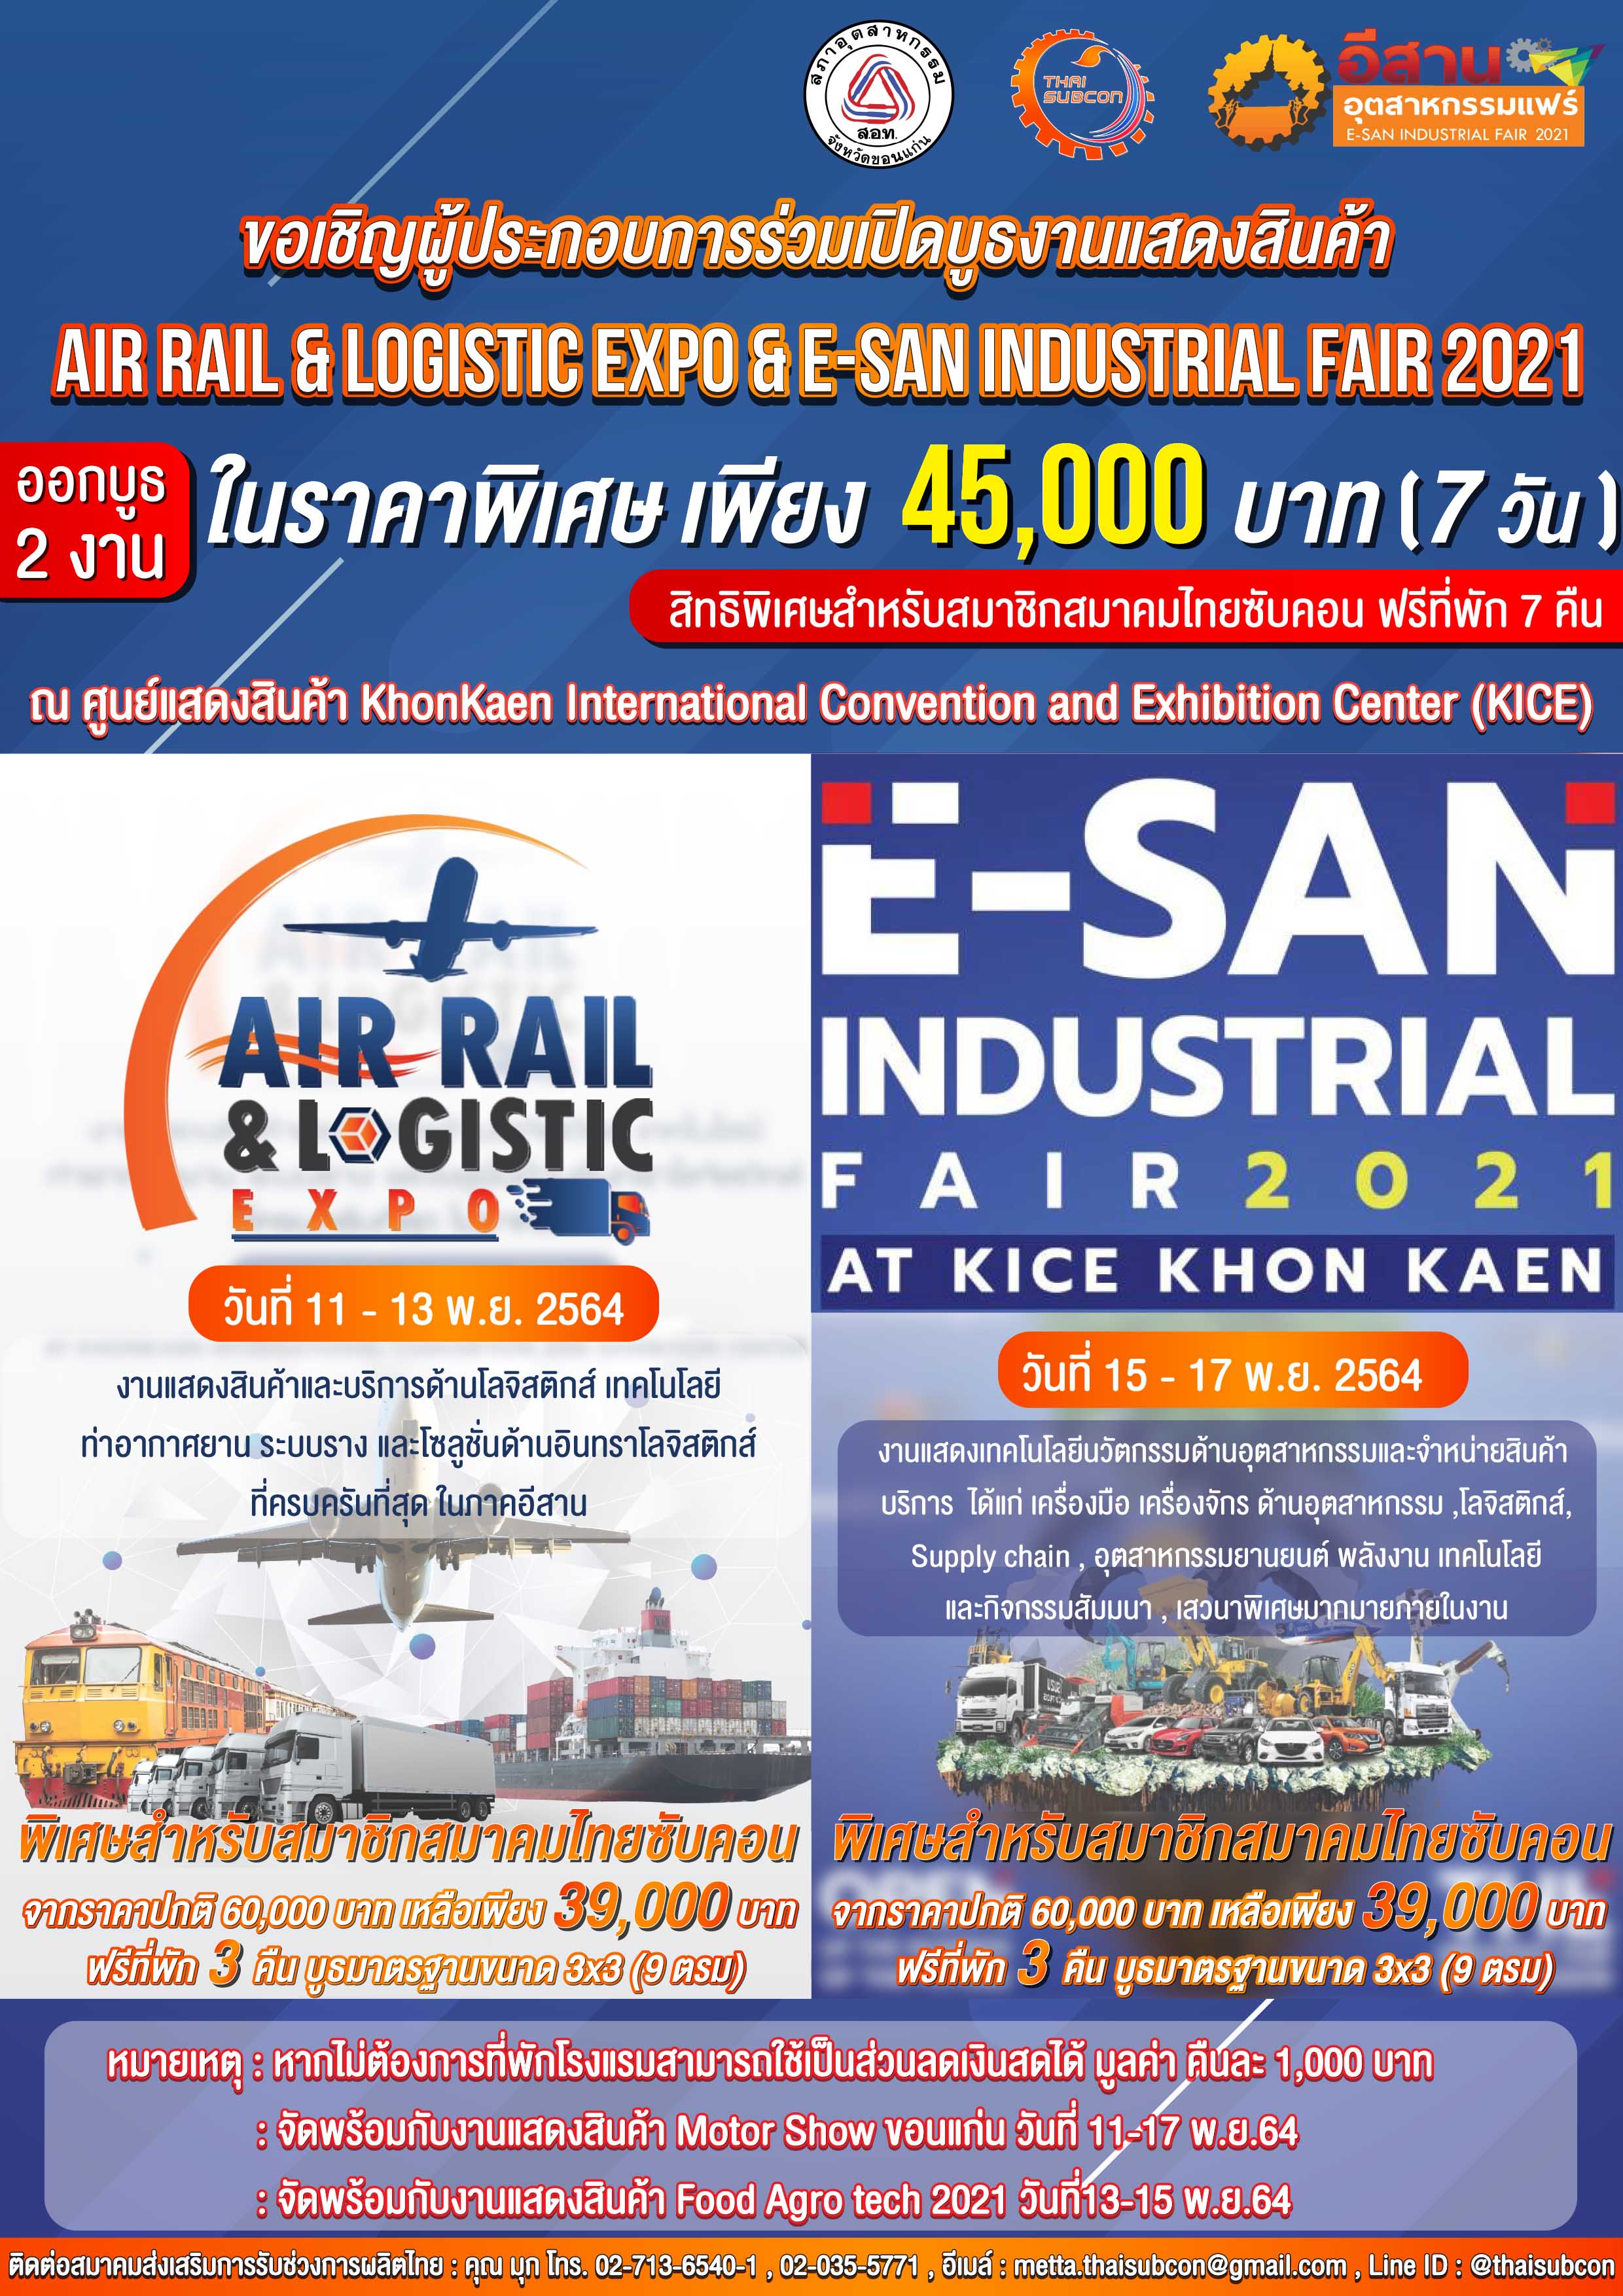 AIR RAIL LOGICTIC EXPO & E - SARN INDUSTRILAL FAIR 2021